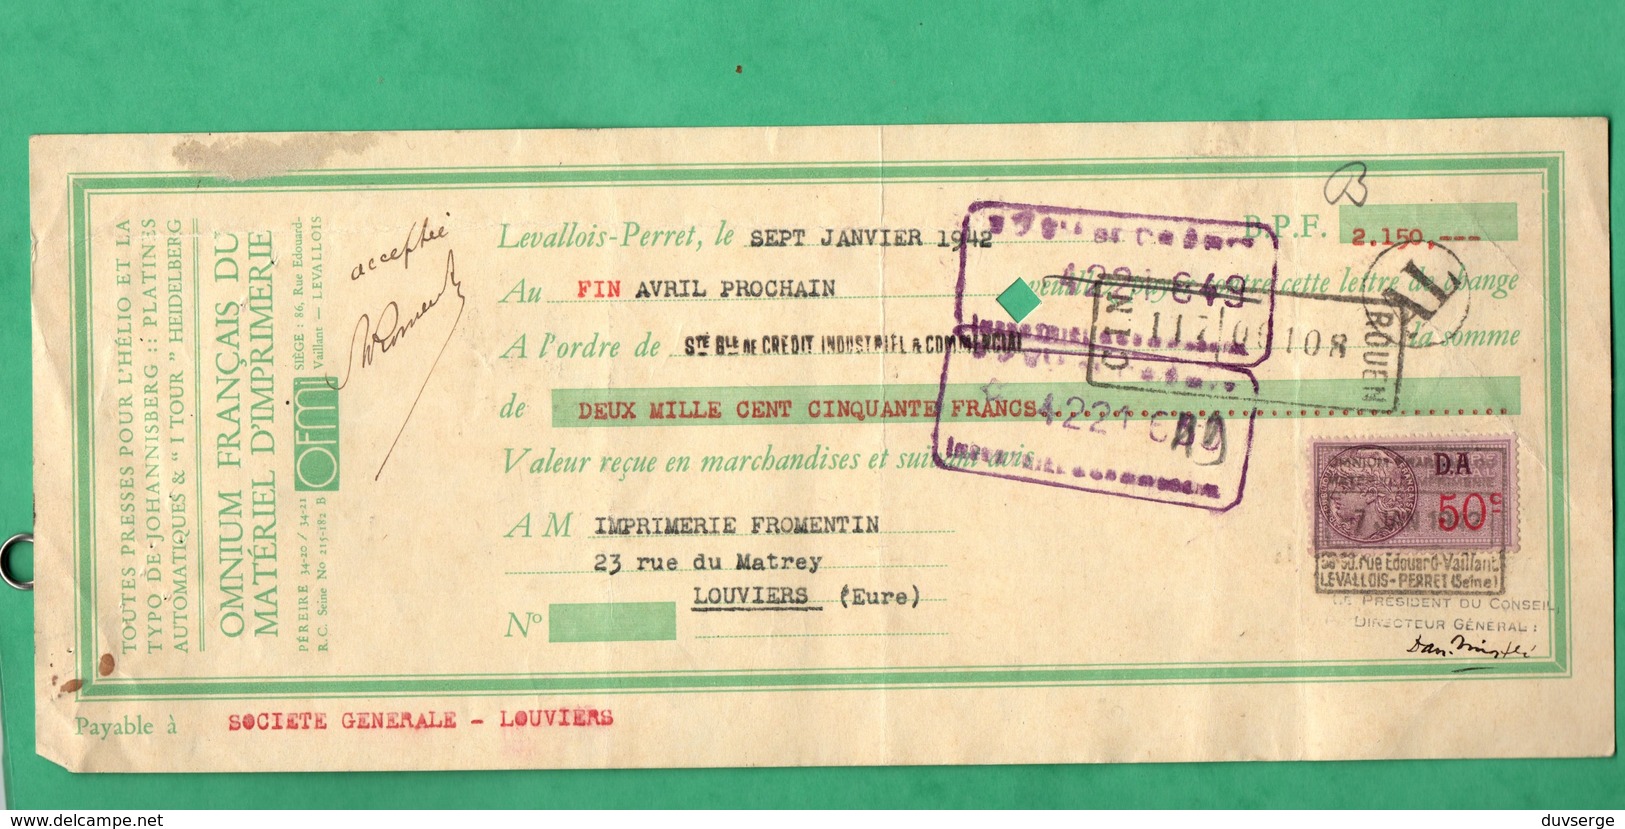 1942 Cheque Lot De 5 Cheques O F M I Levallois Pour Imprimerie Fromentin Louviers Voir 10 Scans Format 28cm X 11,5cm - Chèques & Chèques De Voyage